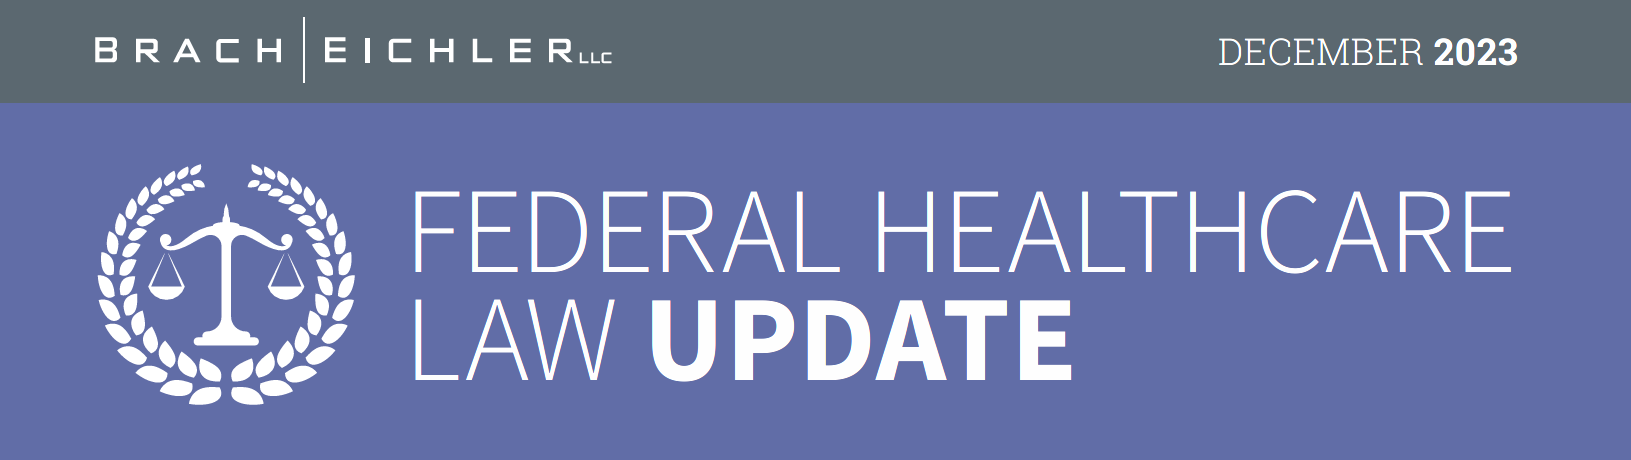 Federal Healthcare Law Update – December 2023 - Brach Eichler